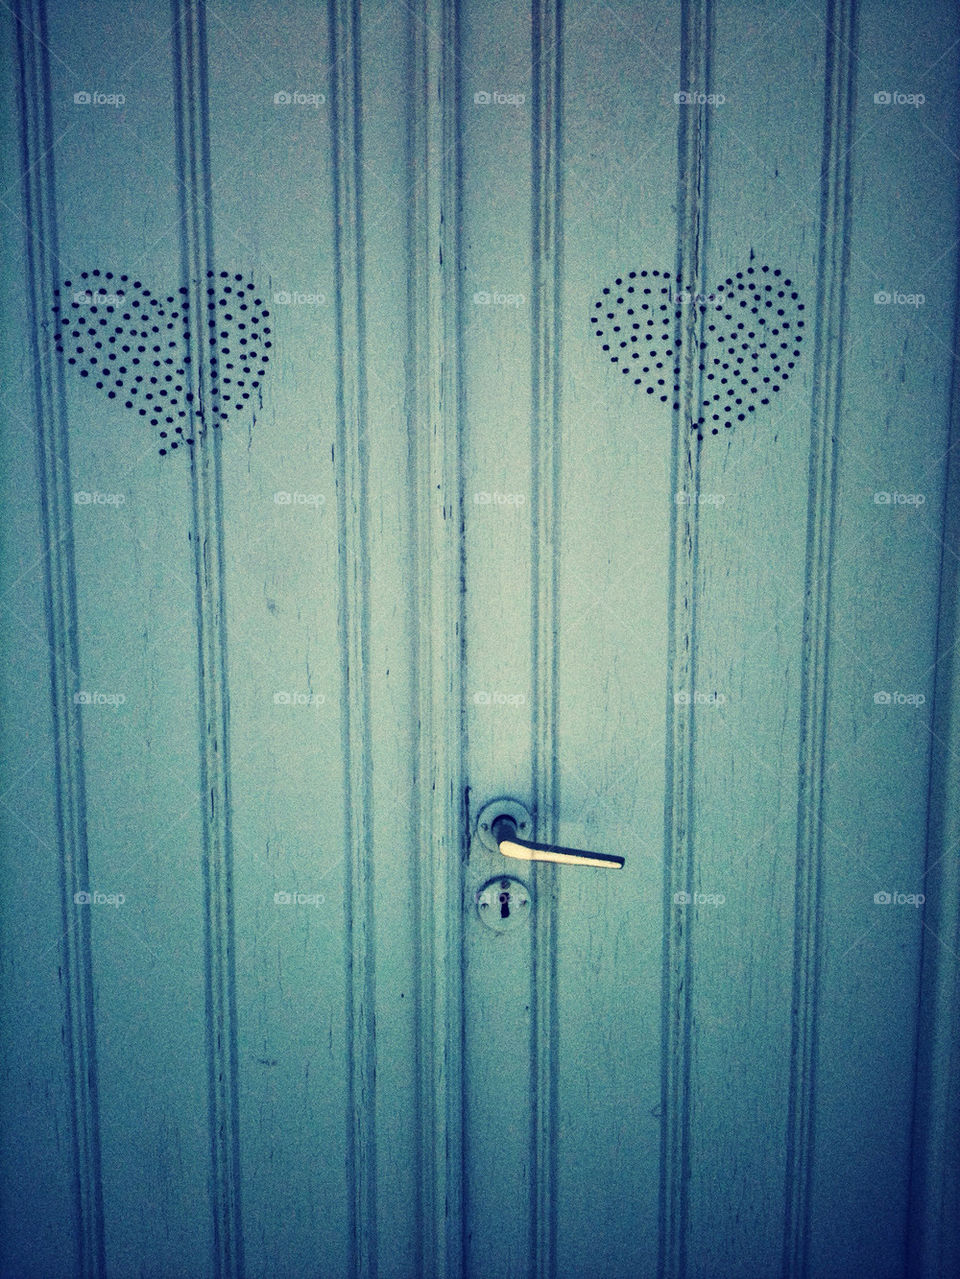 Blue door with hearts